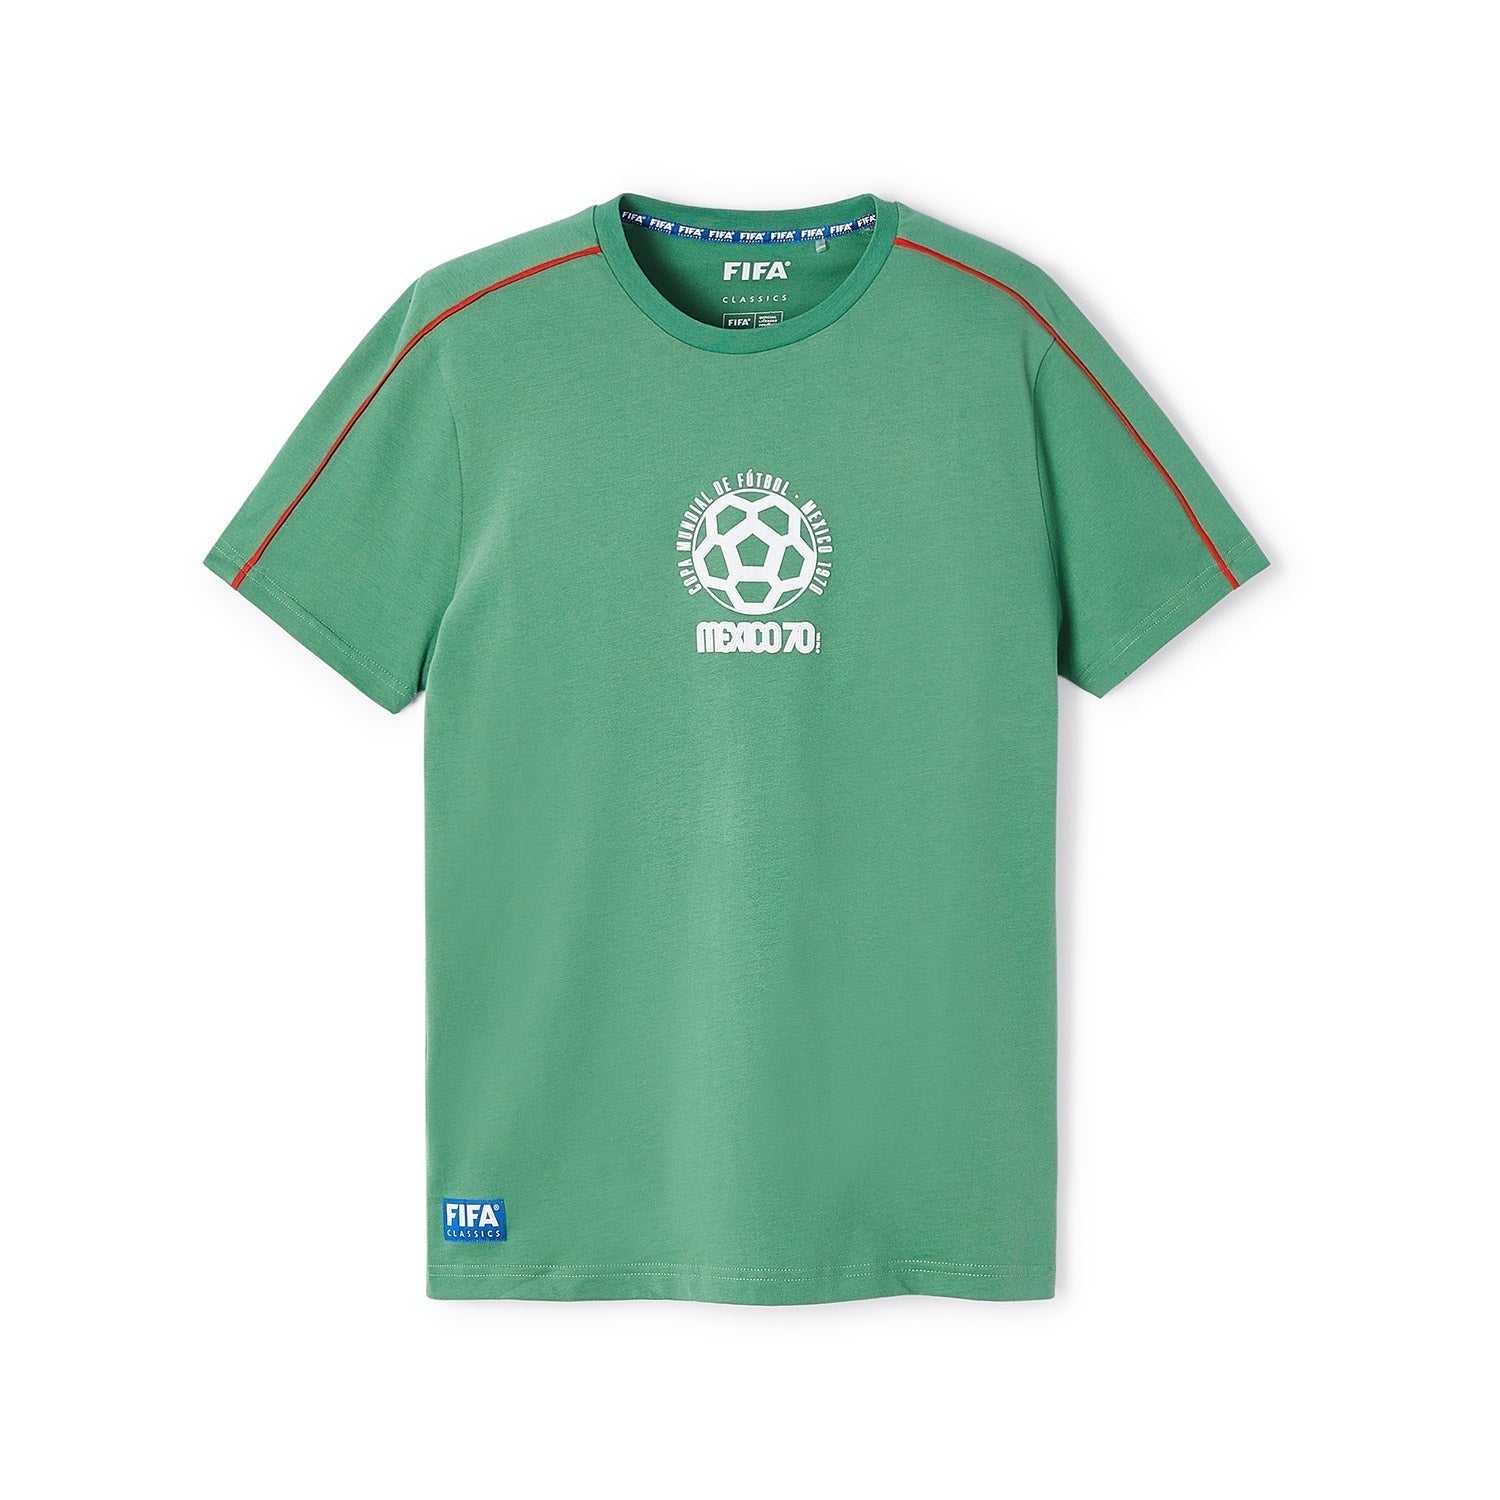 FIFA Rewind Mexico '70 - Emblem Text T-Shirt - Men's